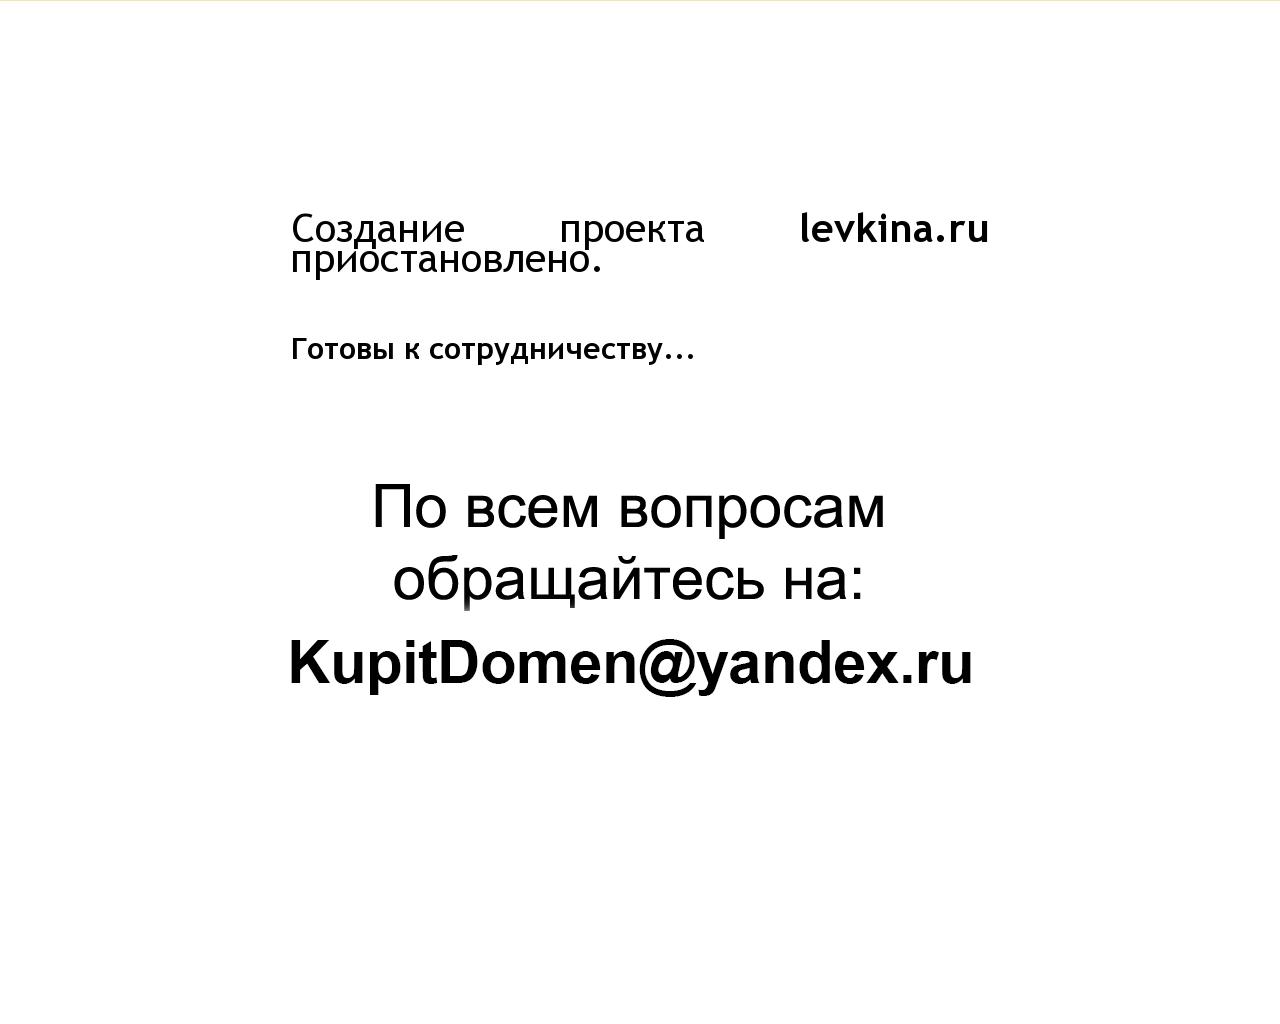 Изображение сайта levkina.ru в разрешении 1280x1024